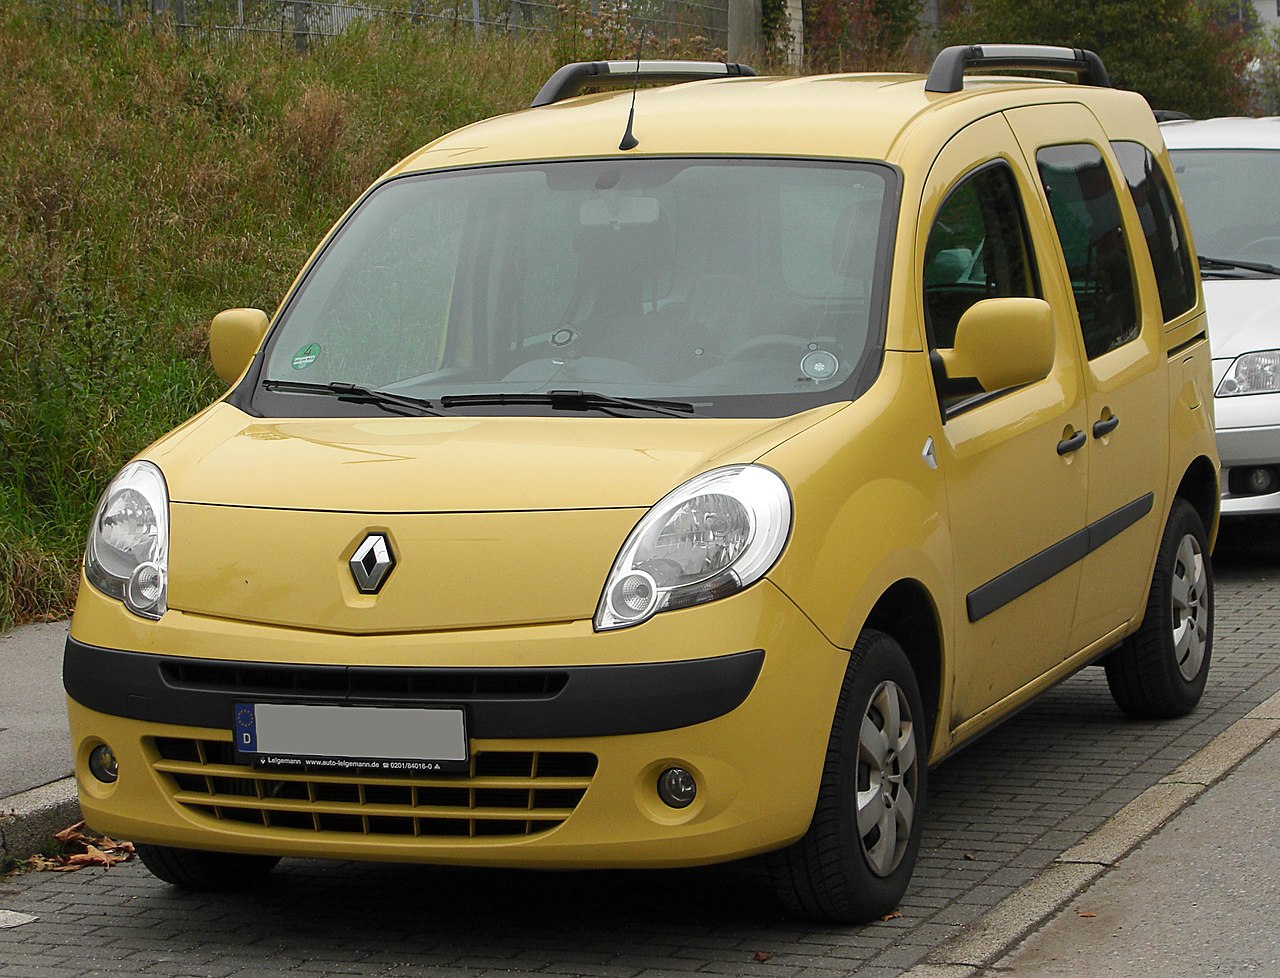 File:Renault Kangoo II front 20101017.jpg - Wikimedia Commons